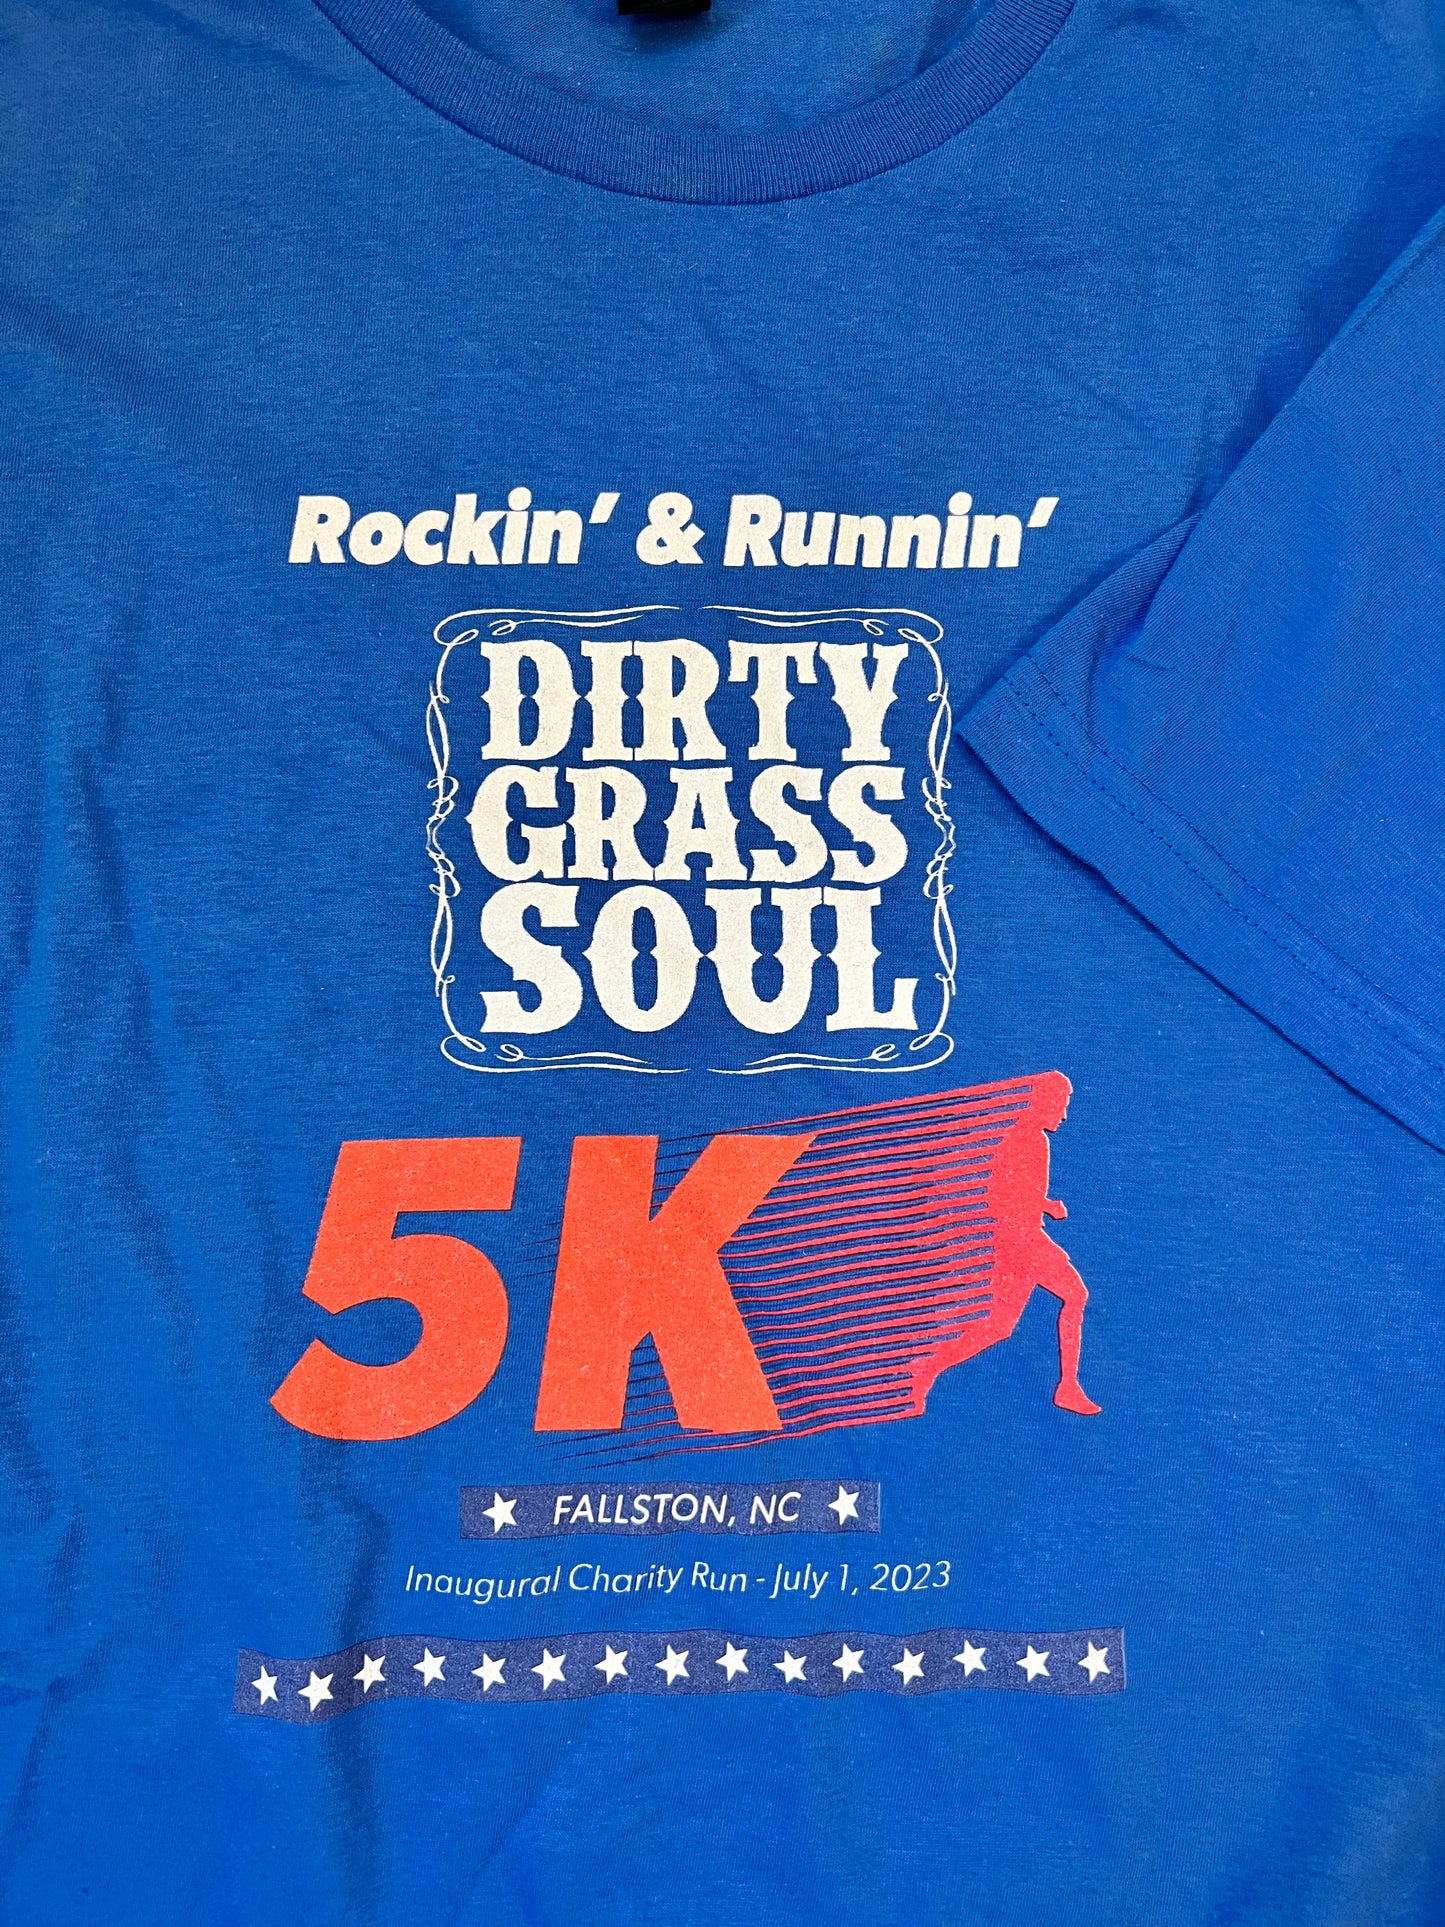 Rockin’ & Runnin’ 5K Charity Run T-Shirt